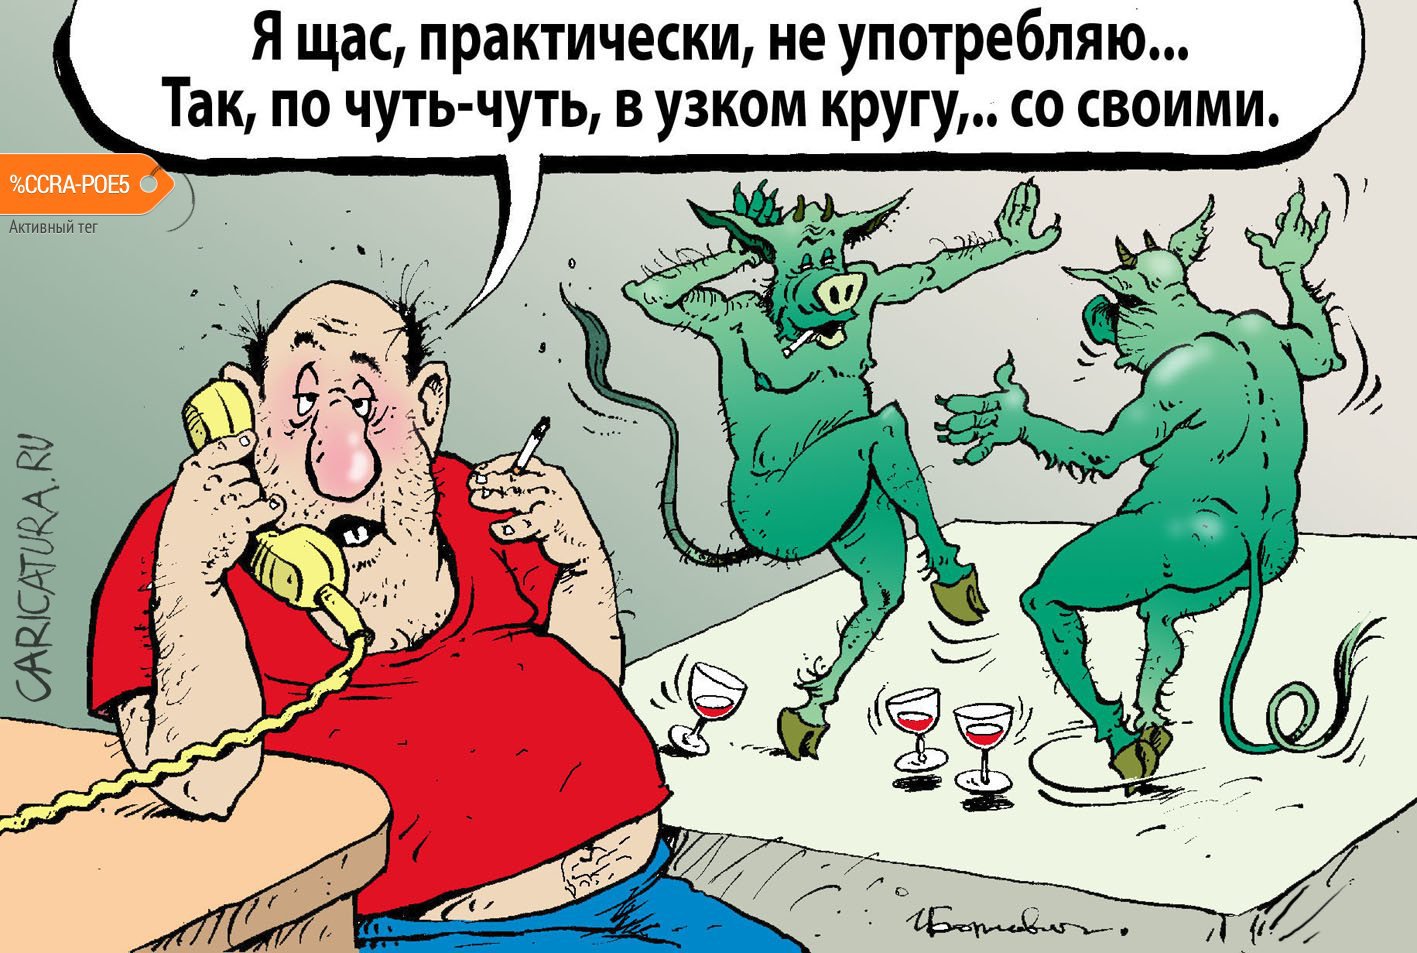 Карикатура "По чуть-чуть со своими", Игорь Елистратов